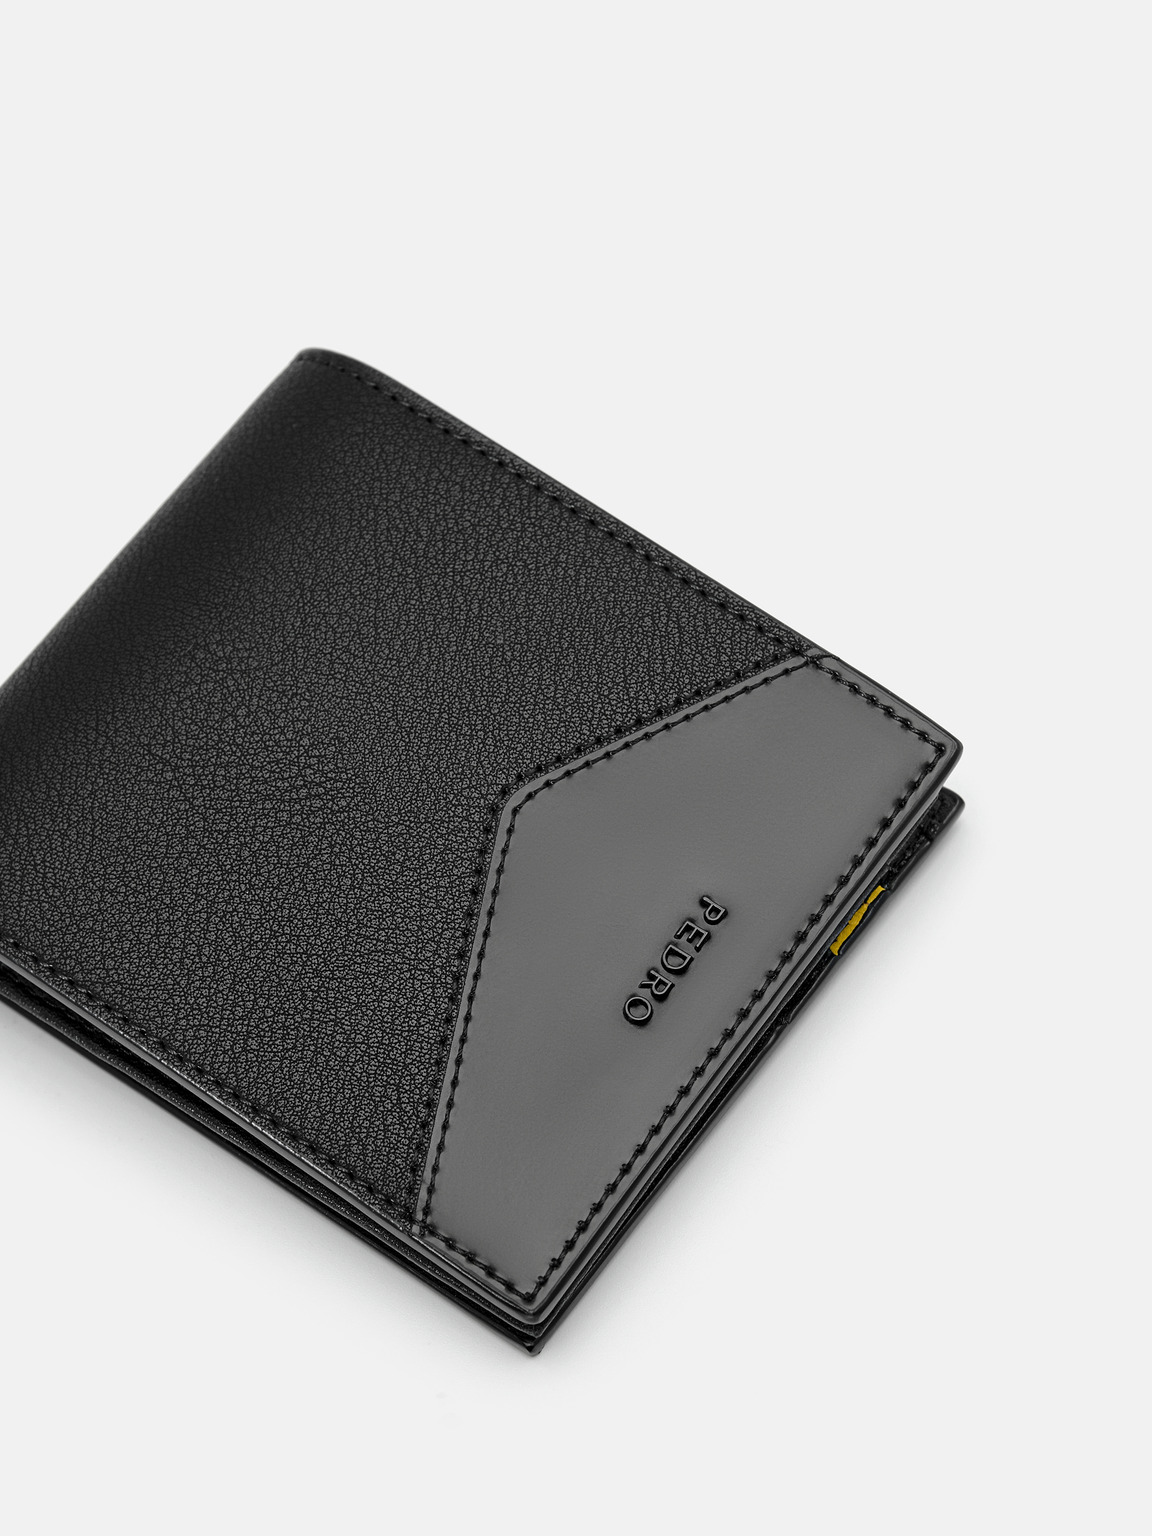 Leather Bi-Fold Flip Wallet, Black